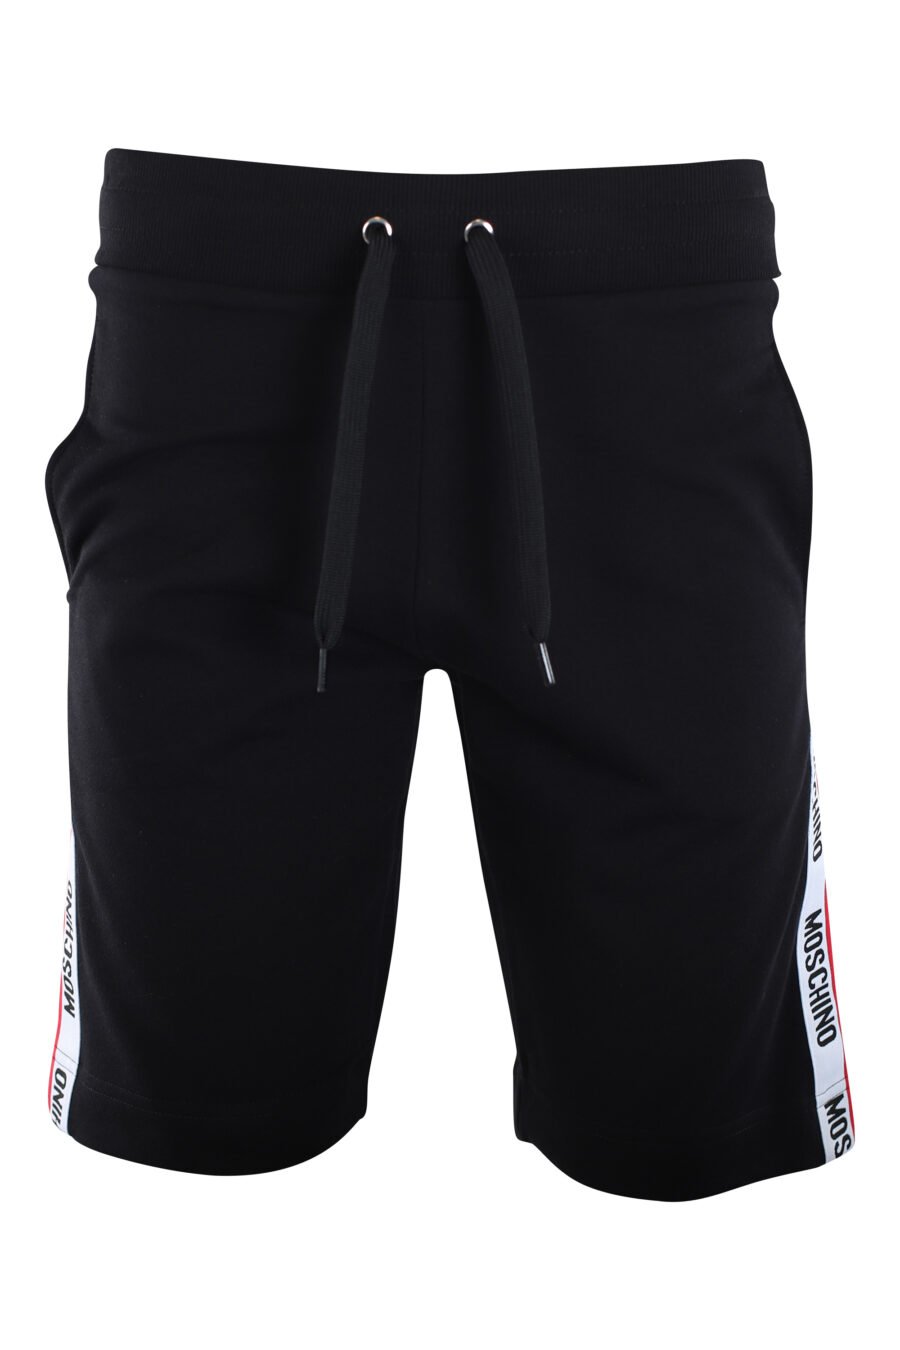 Pantalón de chándal corto negro con logo en banda laterales - IMG 2234